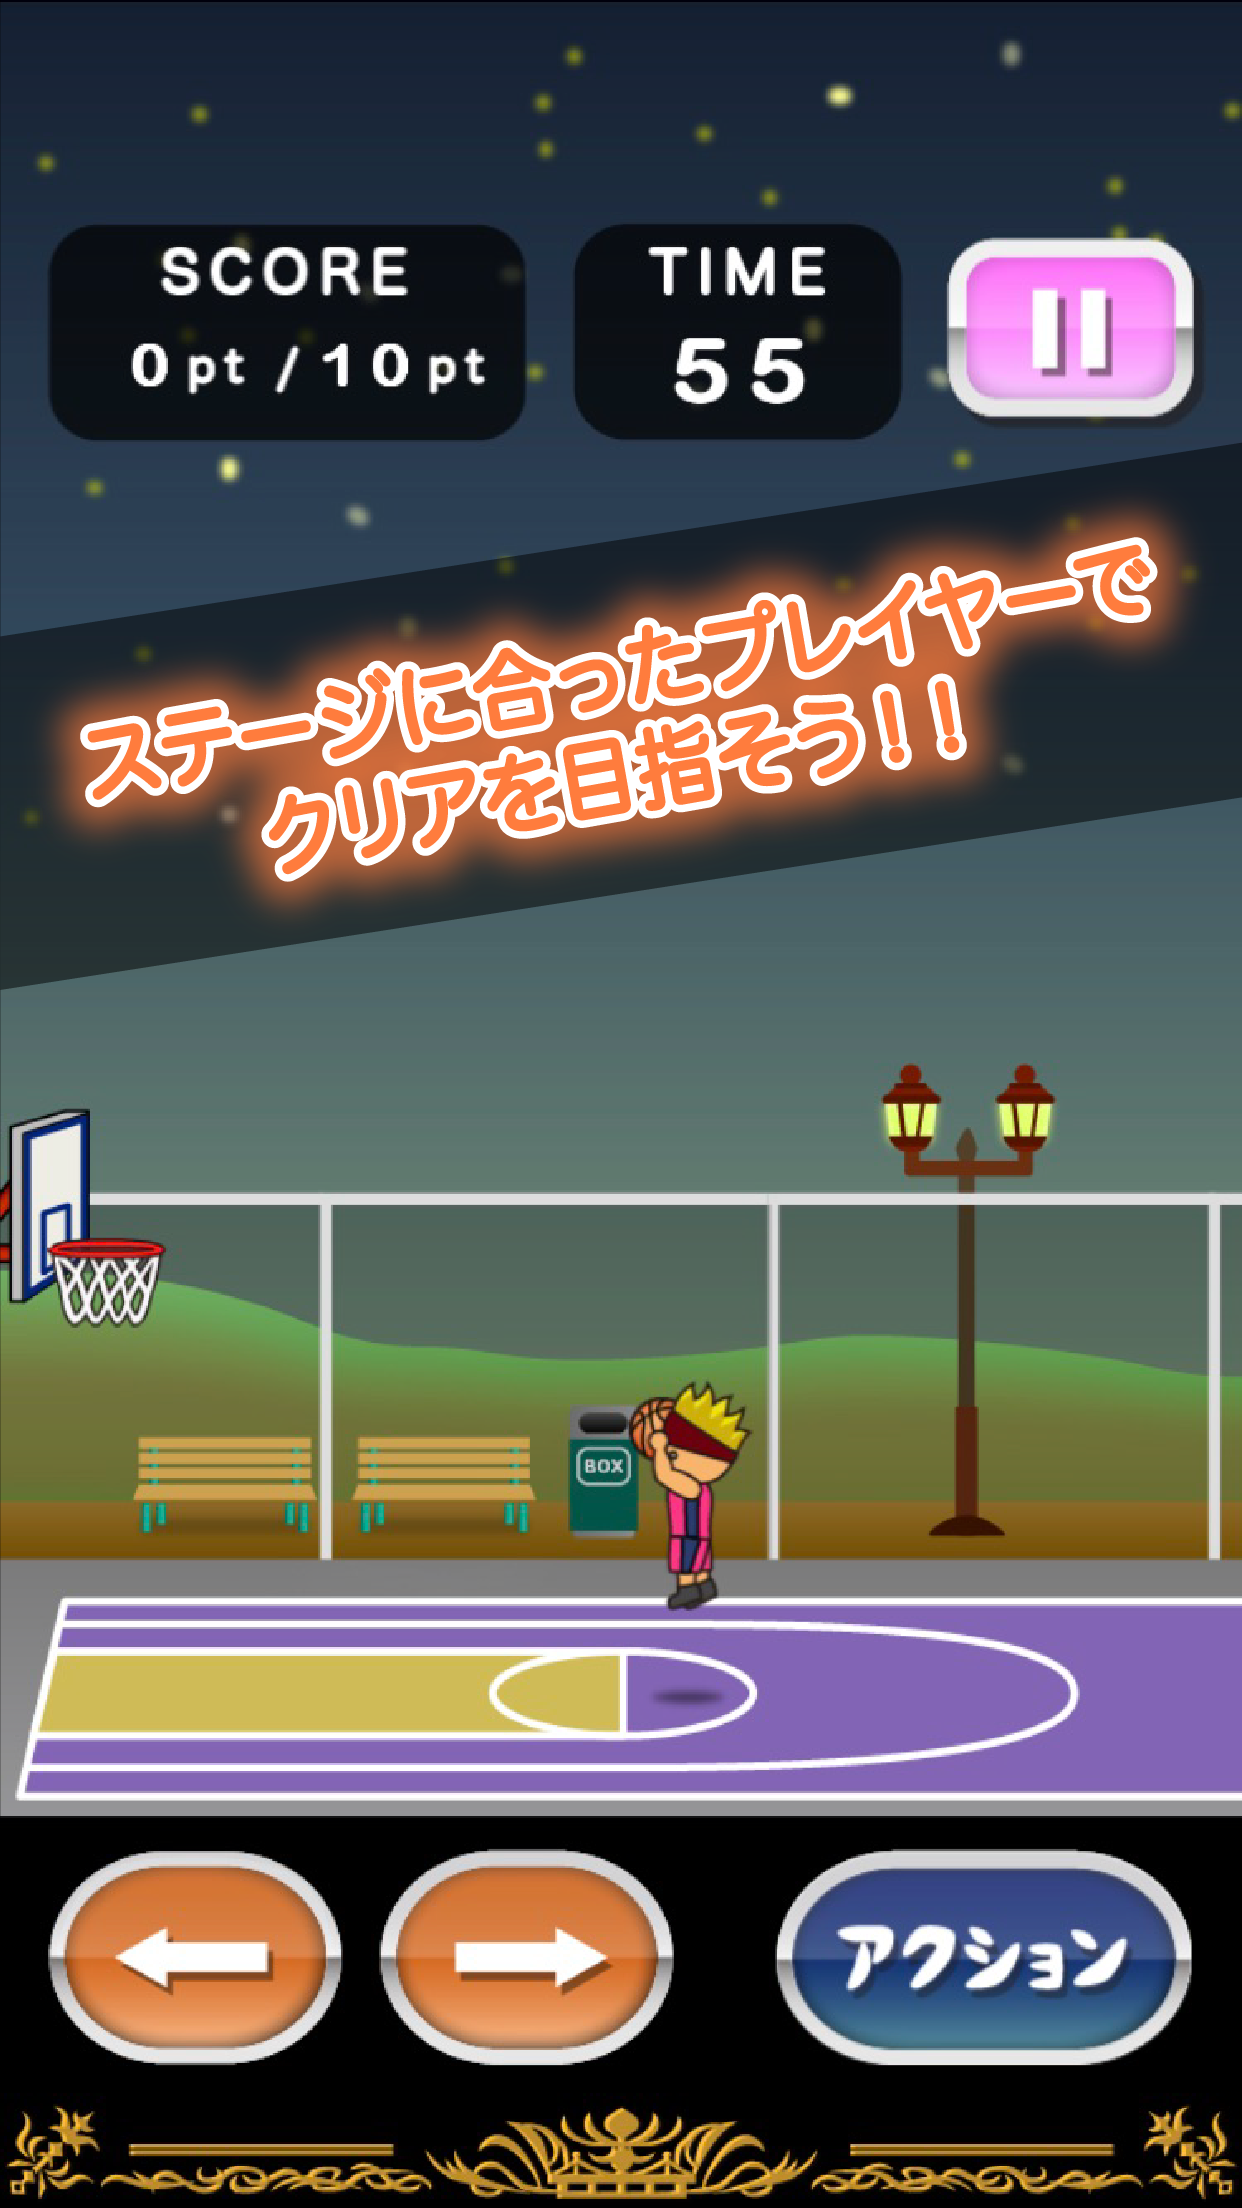 Screenshot 1 of Tony-kun arrête le basket 2 1.3